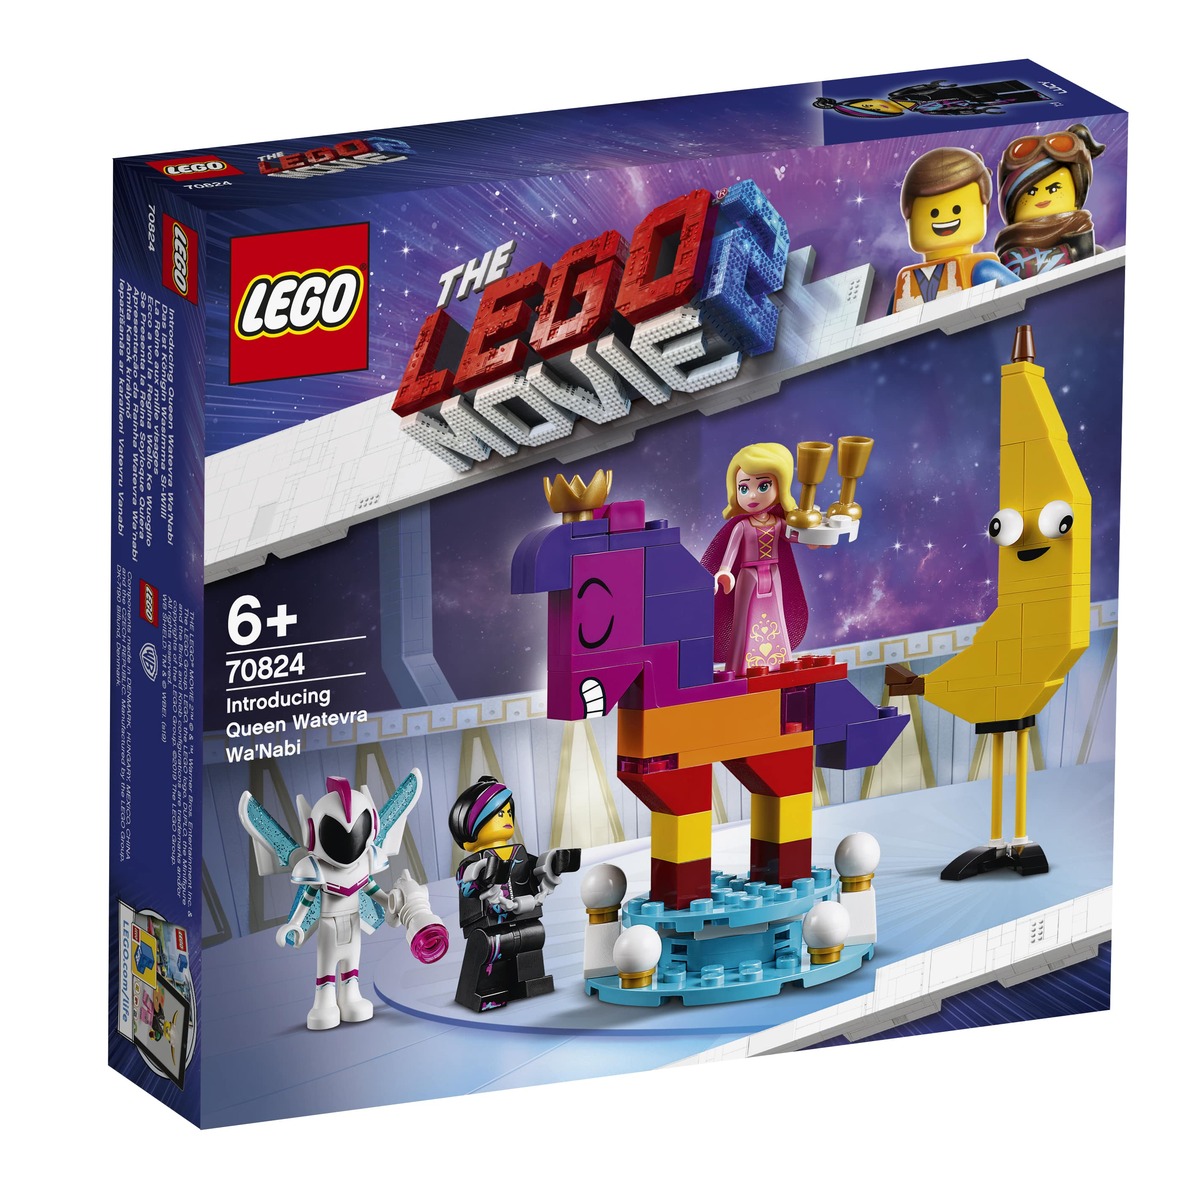 Легенда, которая оживает: готовимся к премьере «Лего Фильма 2» с новыми наборами LEGO